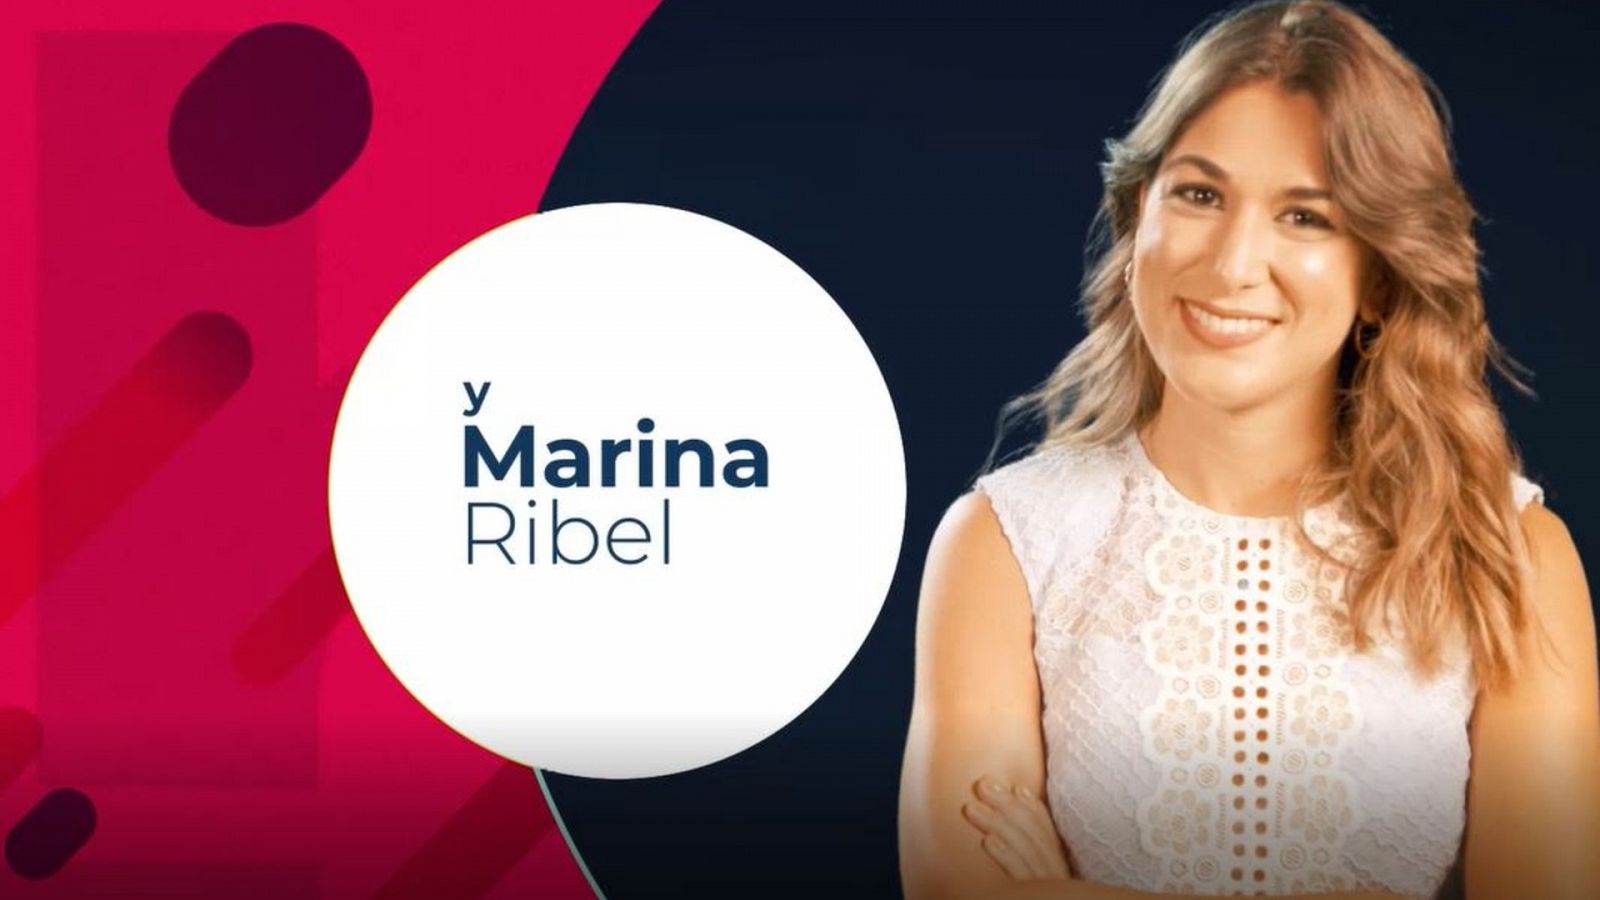 Marina Ribel estará en "La Hora de La 1"